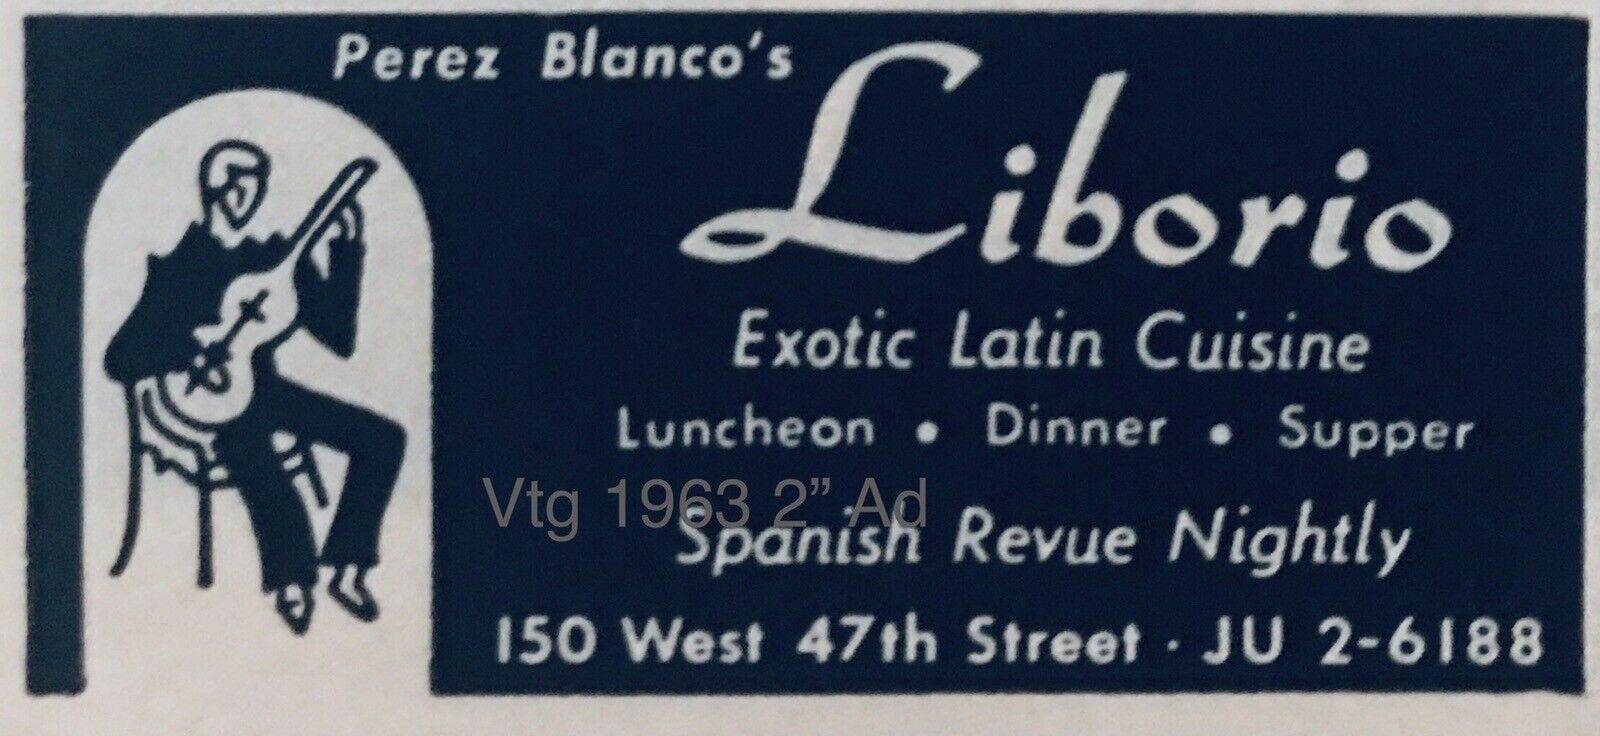 2” AD 1963 Liborio Cuban Restaurant NYC Perez Blanco VINTAGE PROMO